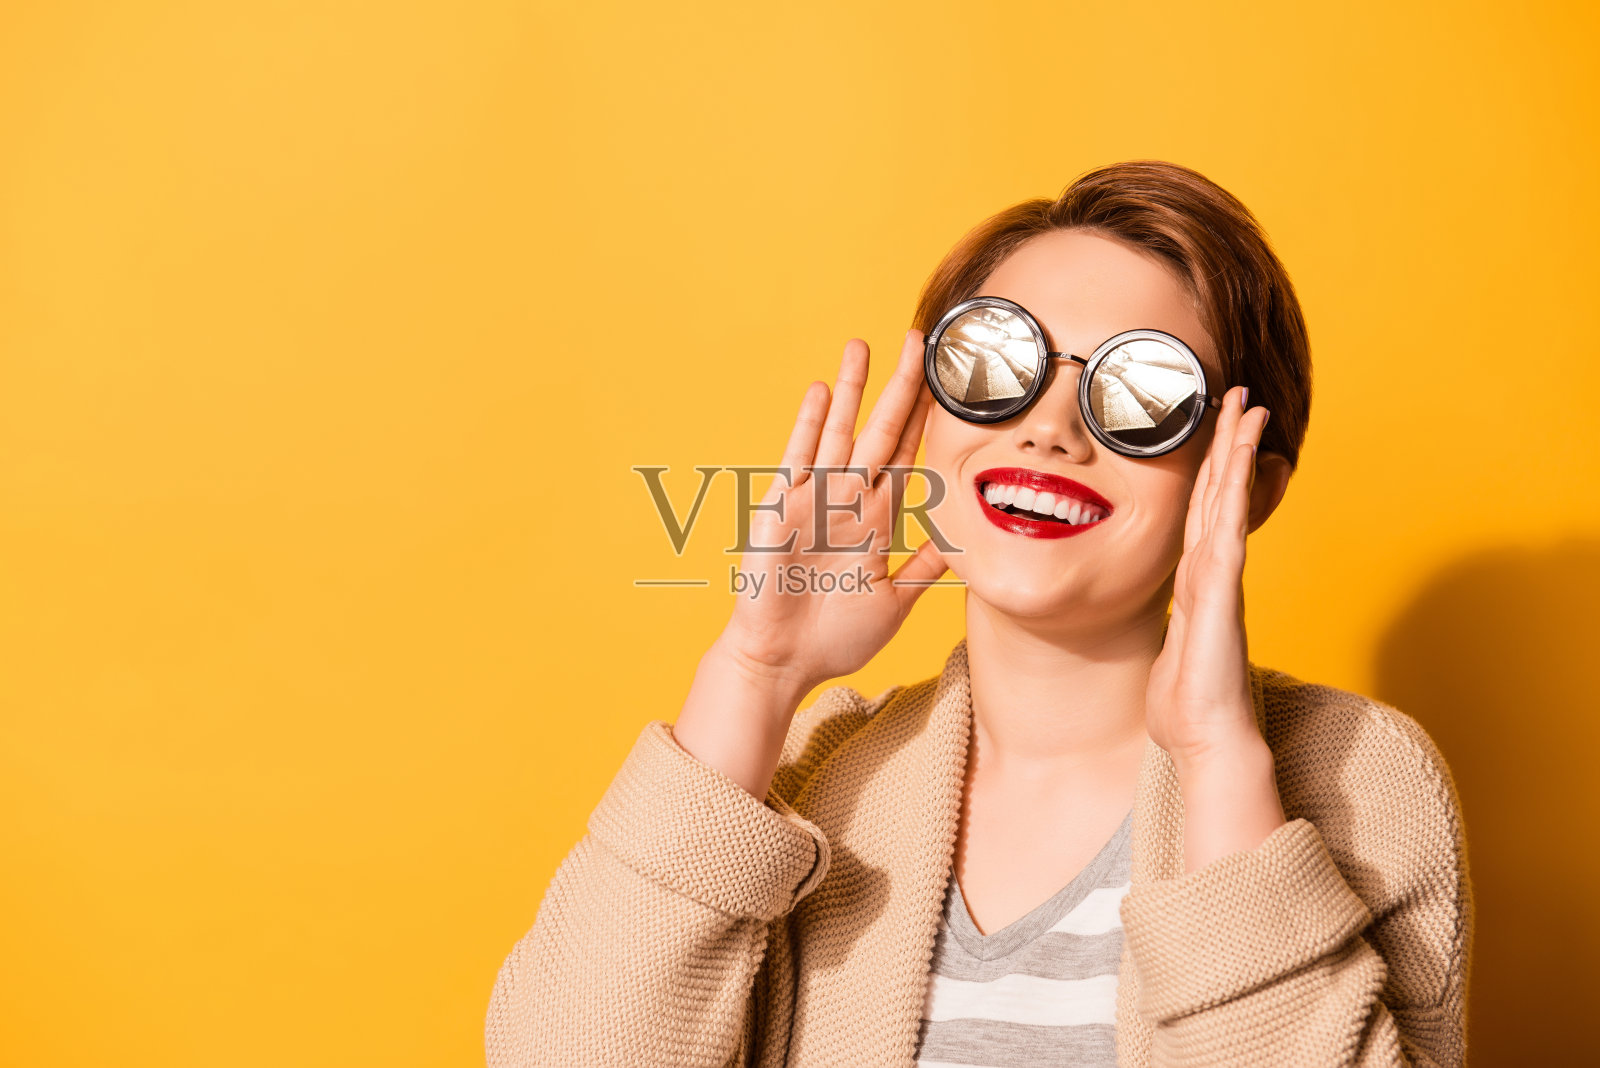 一个可爱的女孩，带着可爱的微笑，戴着时尚的太阳镜，穿着休闲的衣服在明亮的黄色背景照片摄影图片